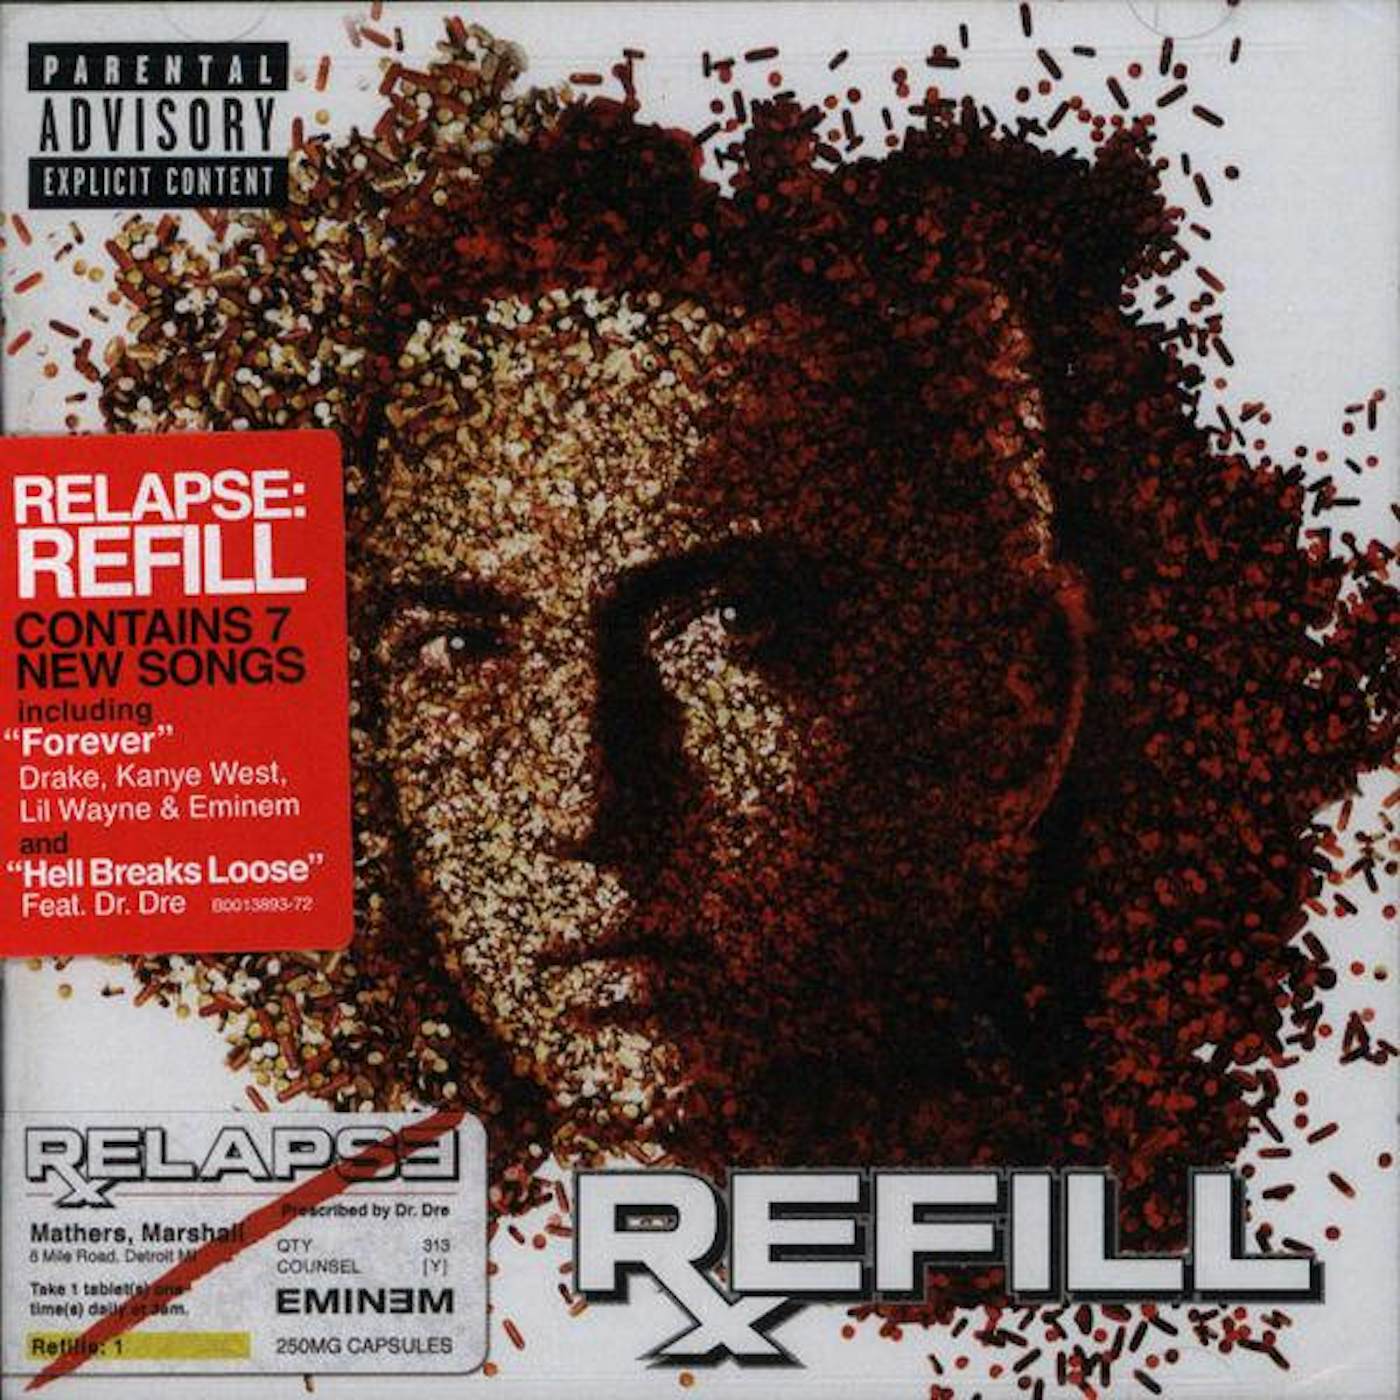 Eminem RELAPSE: REFILL CD